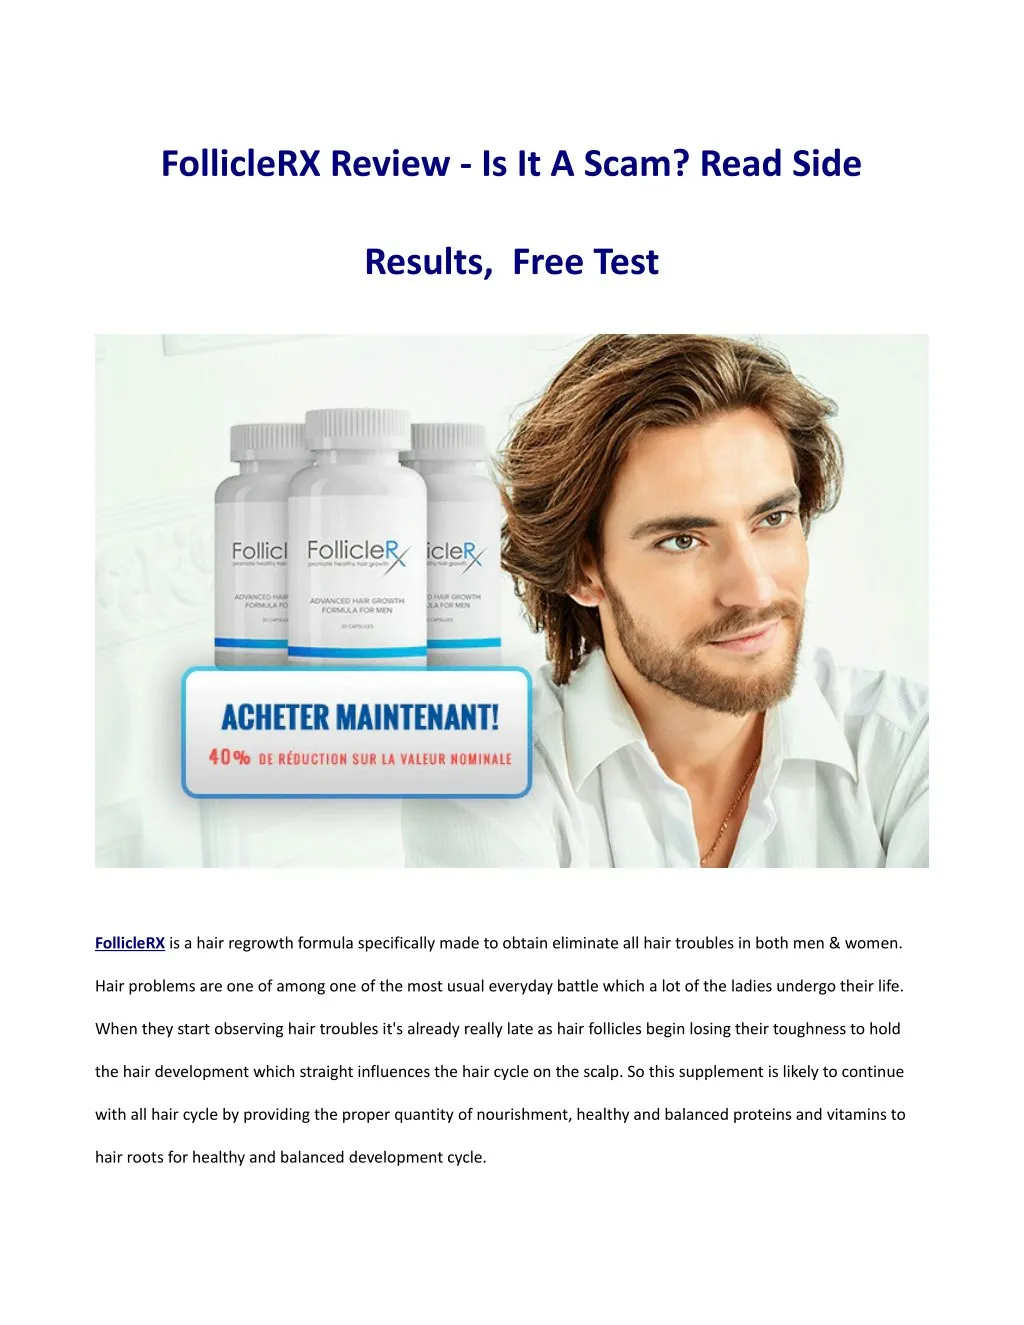 folliclerx review is it a scam read side